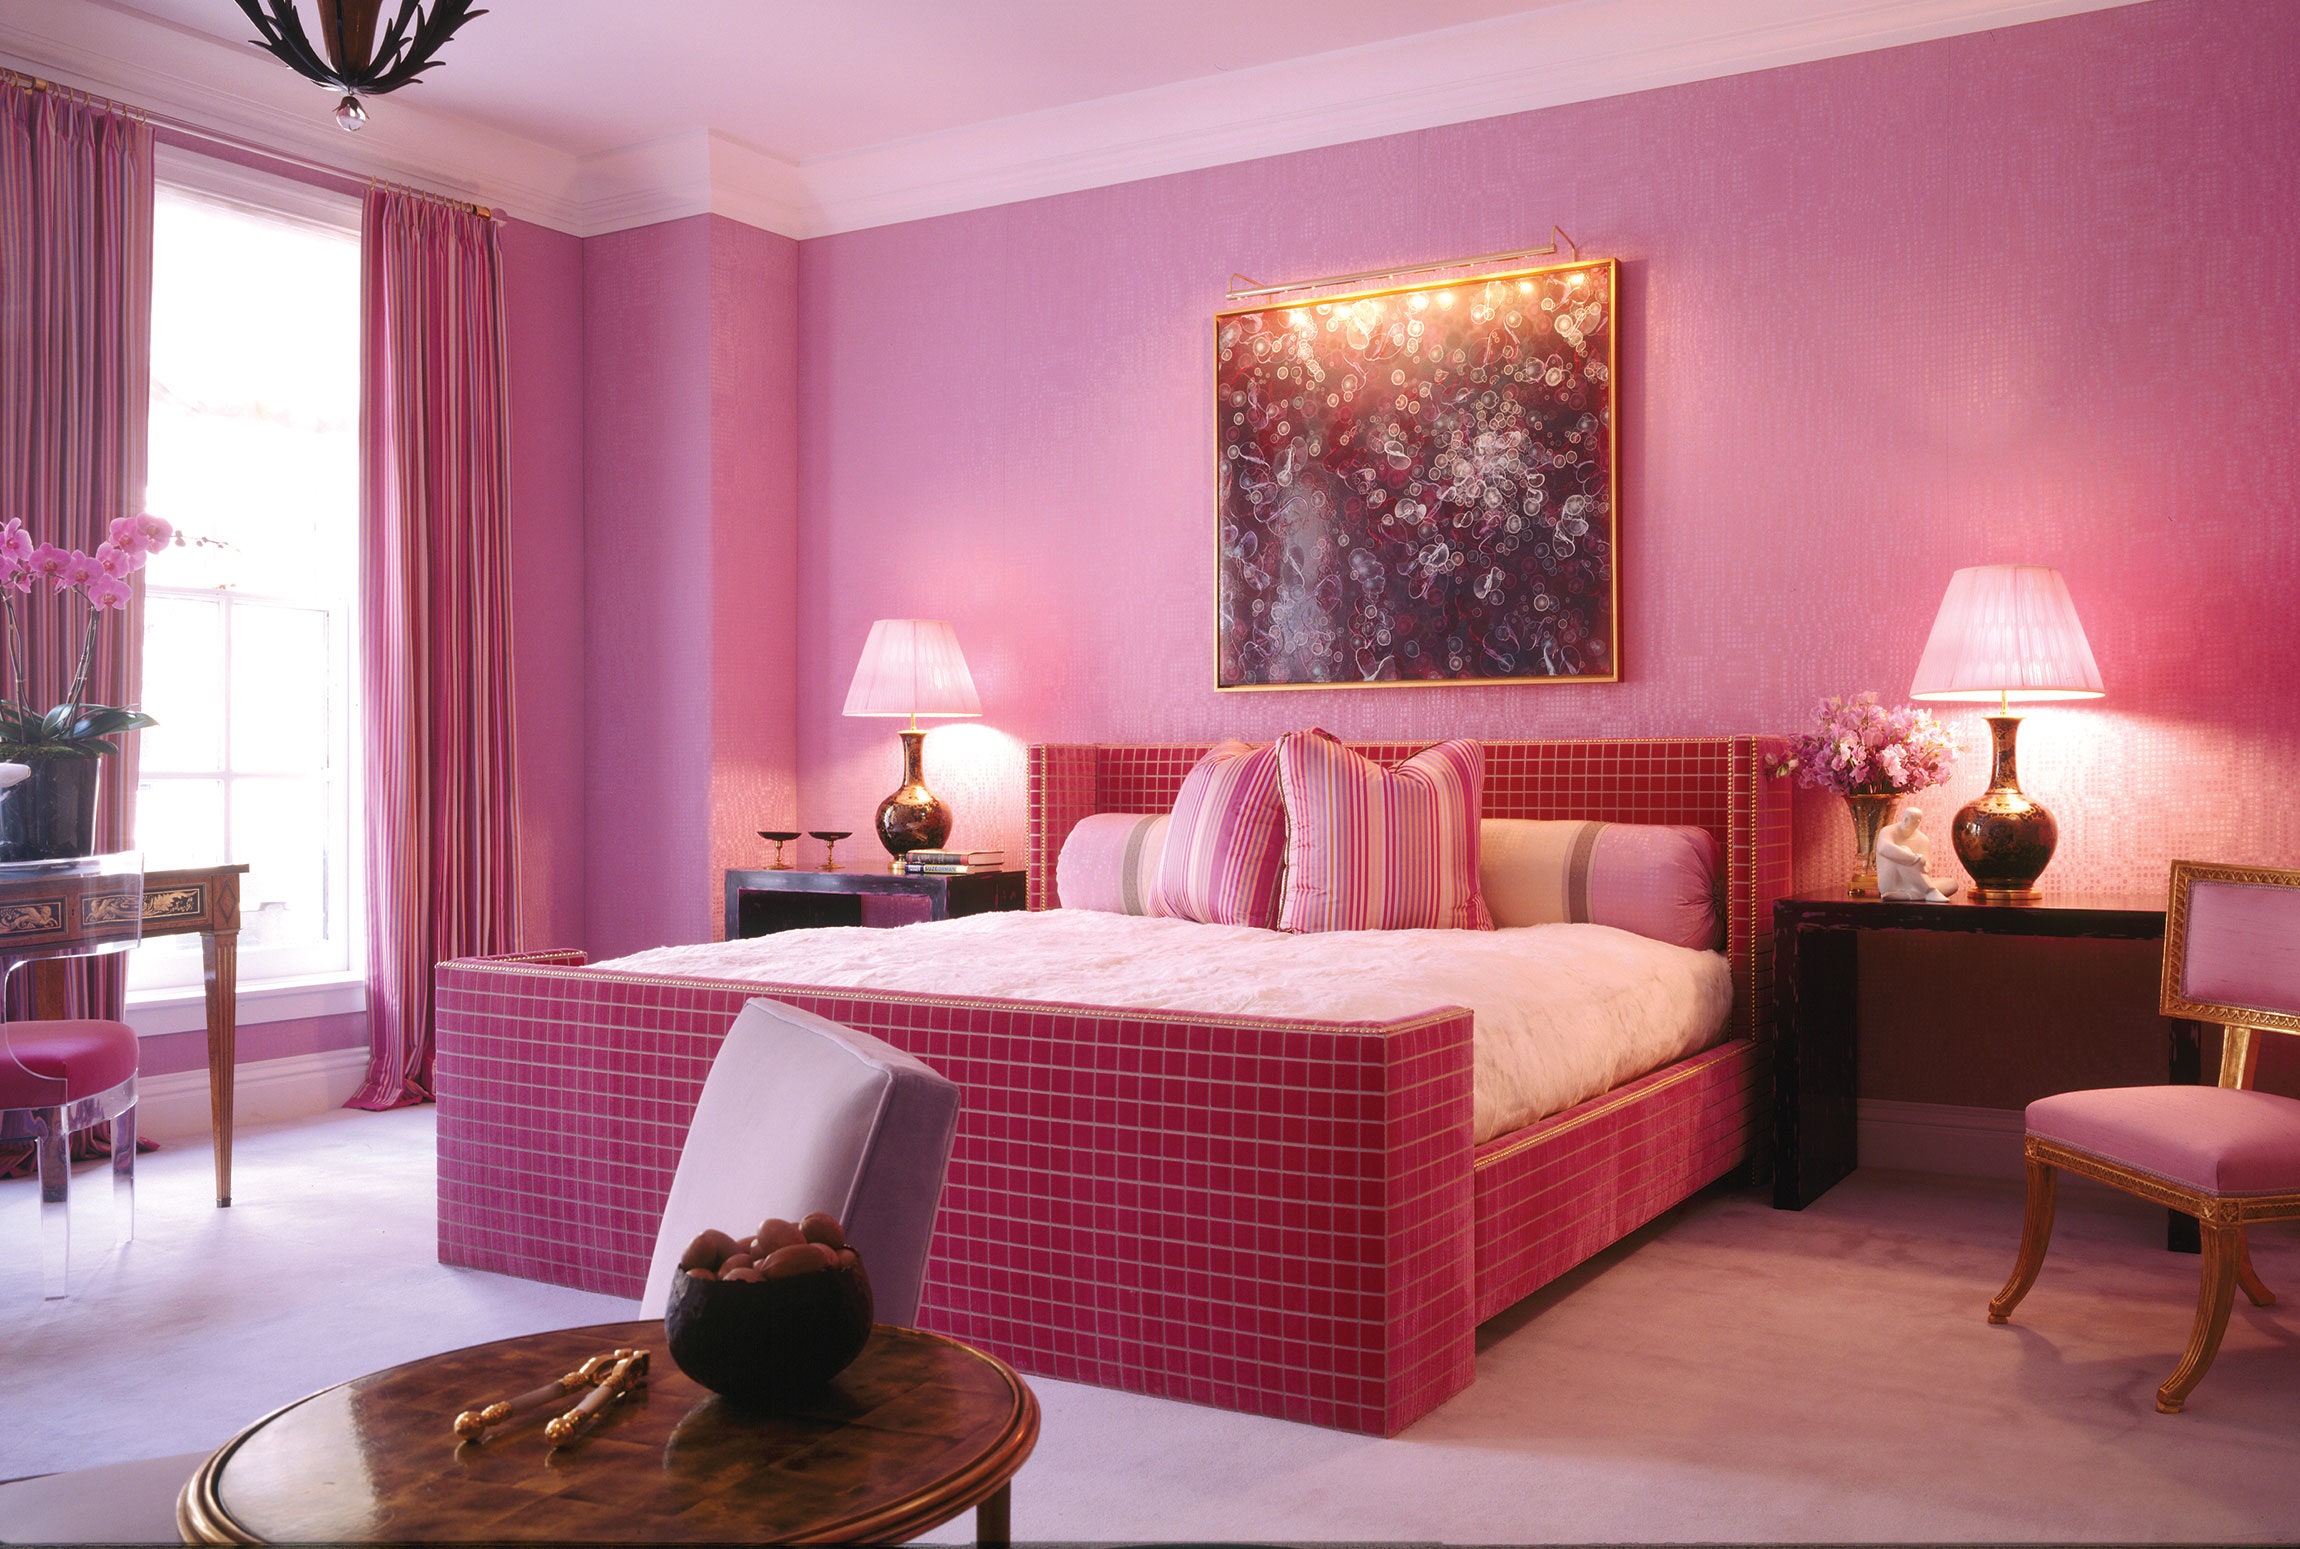 Căn phòng với các nội thất màu hồng đào